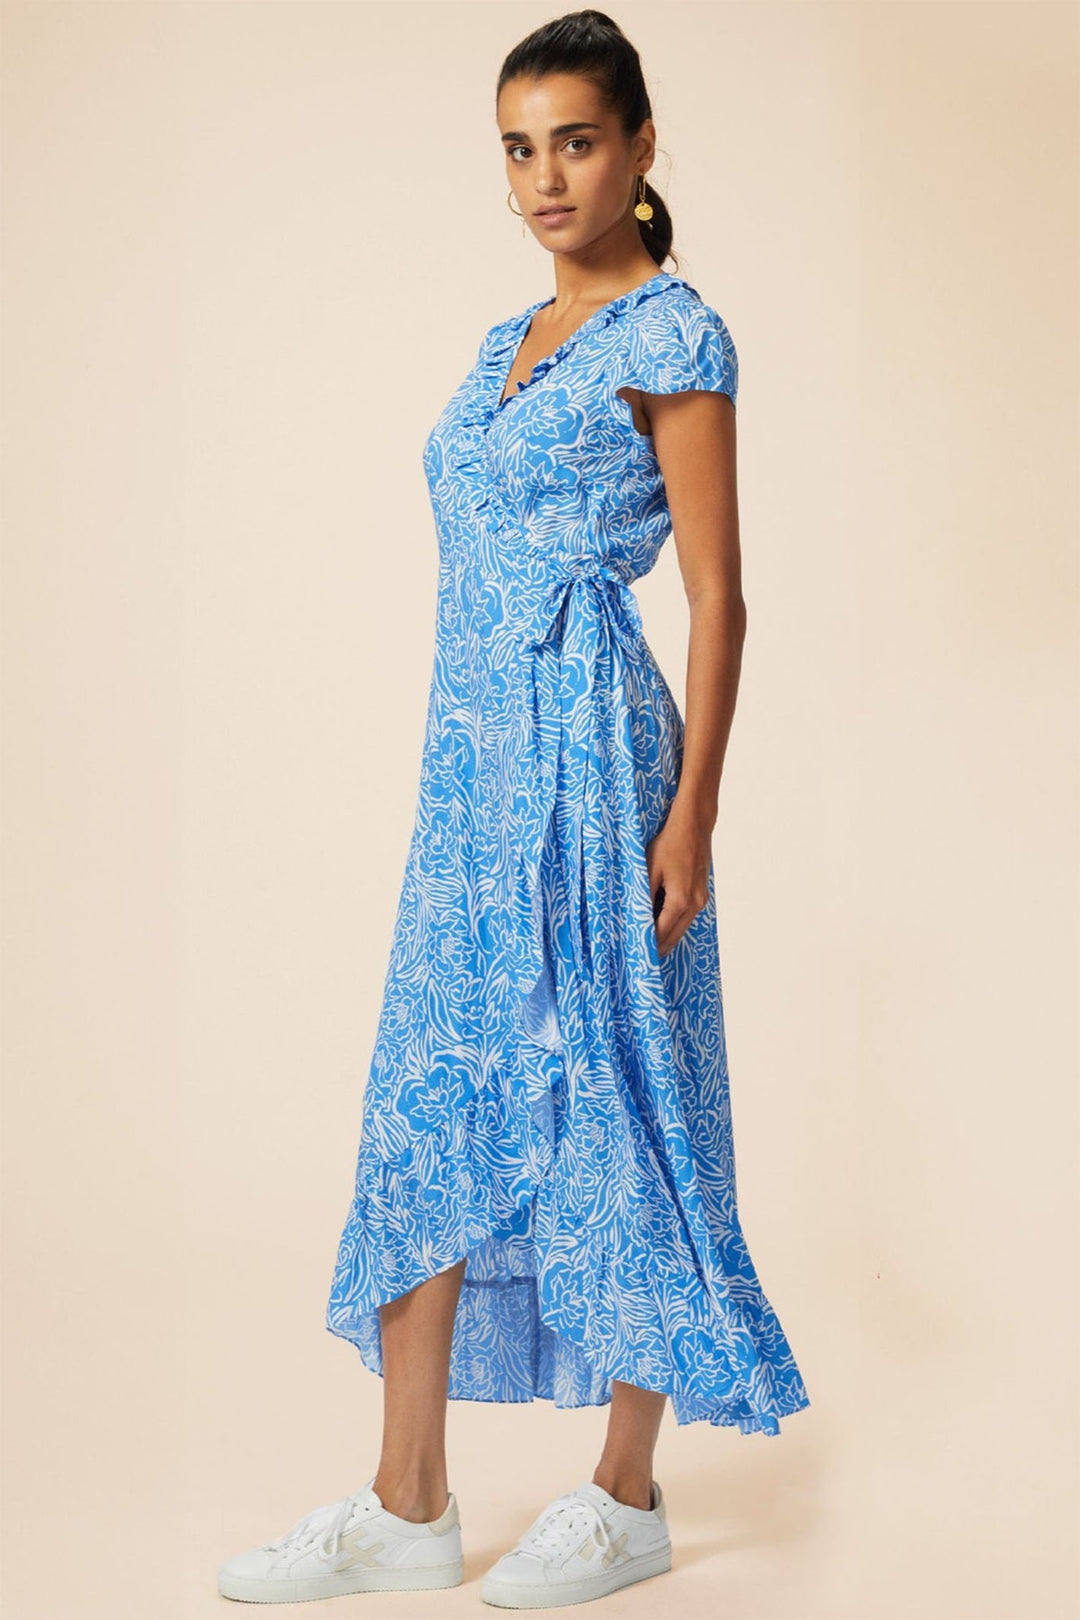 Aspiga Demi Wrap Dress Painted Floral Blue White - Dotique